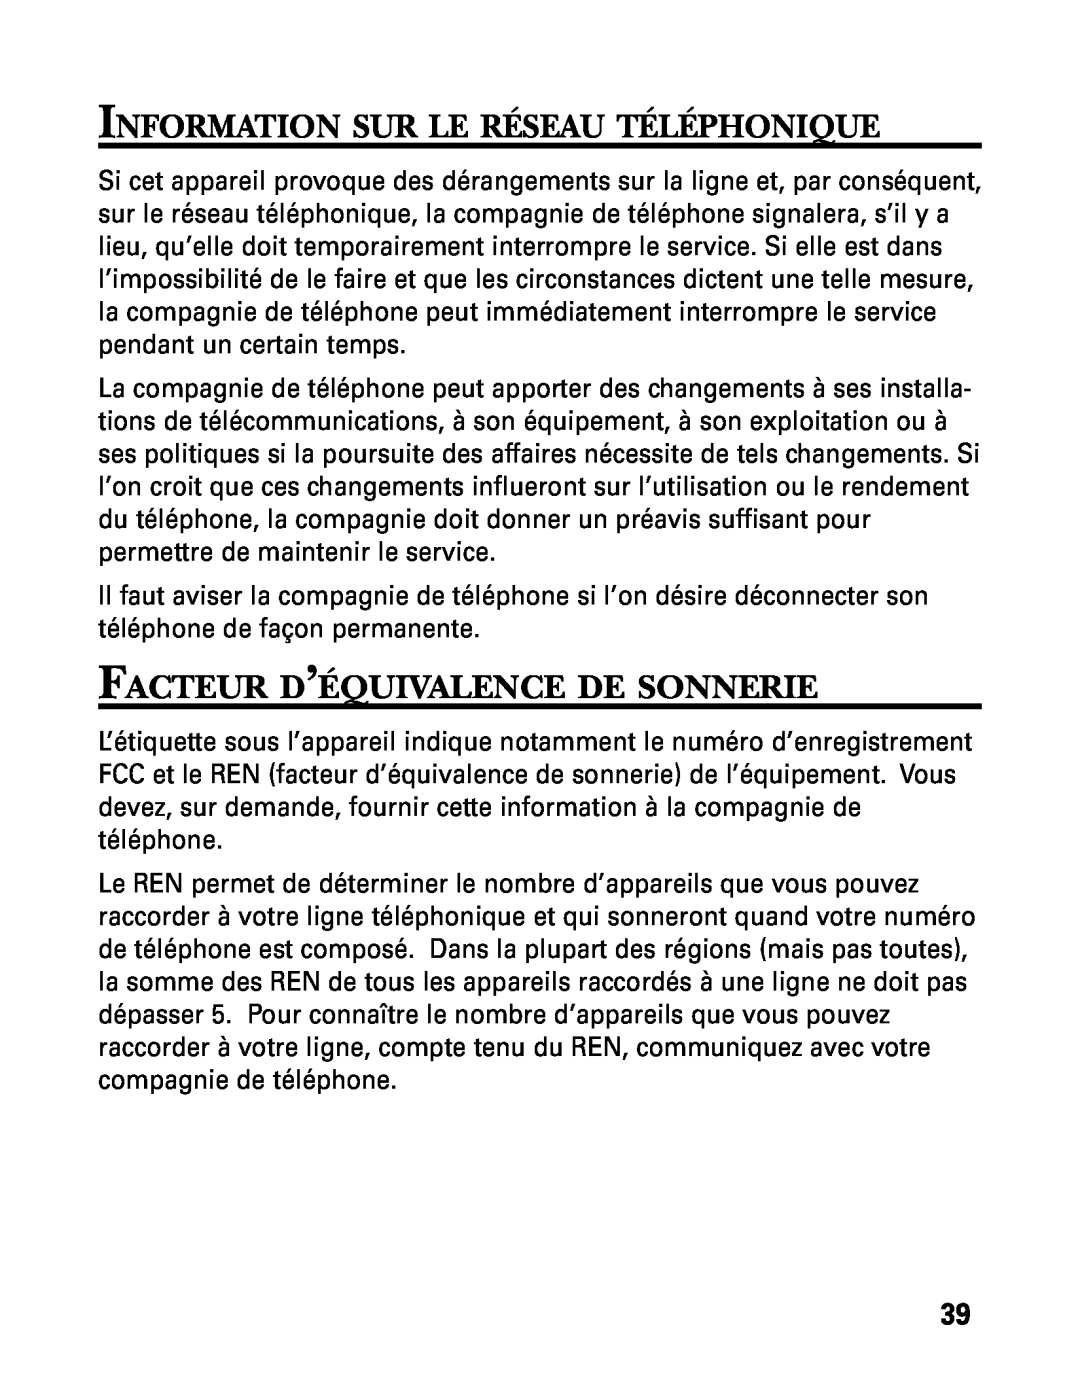 GE 27730 manual Information Sur Le Réseau Téléphonique, Facteur D’Équivalence De Sonnerie 